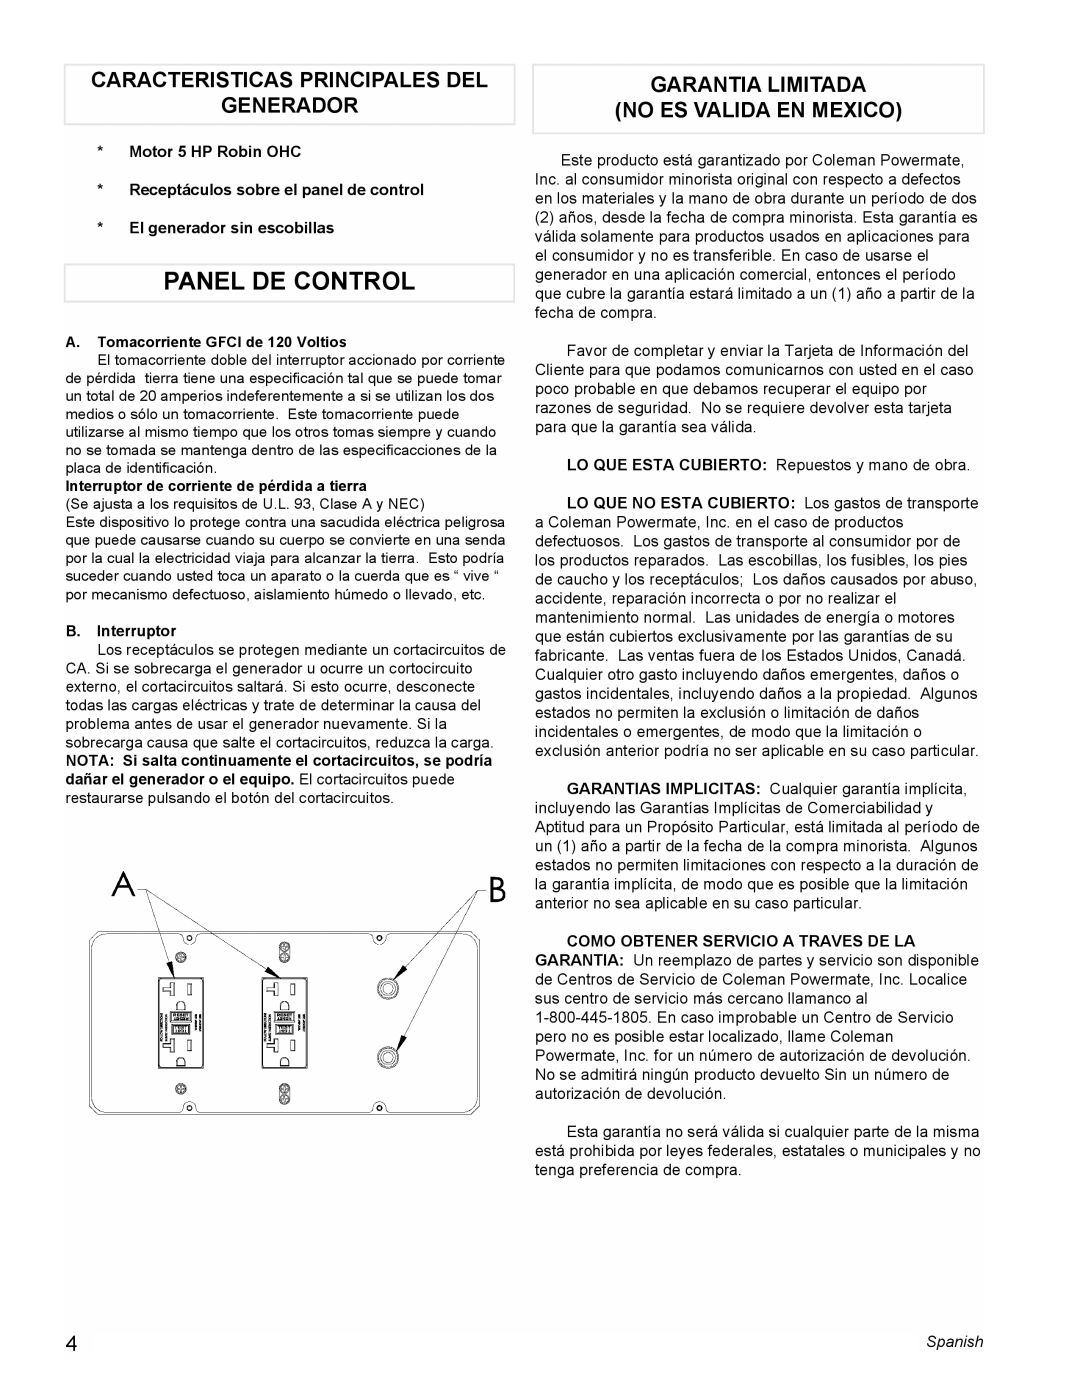 Powermate PM0603250 Panel De Control, Caracteristicas Principales Del Generador, Garantia Limitada No Es Valida En Mexico 